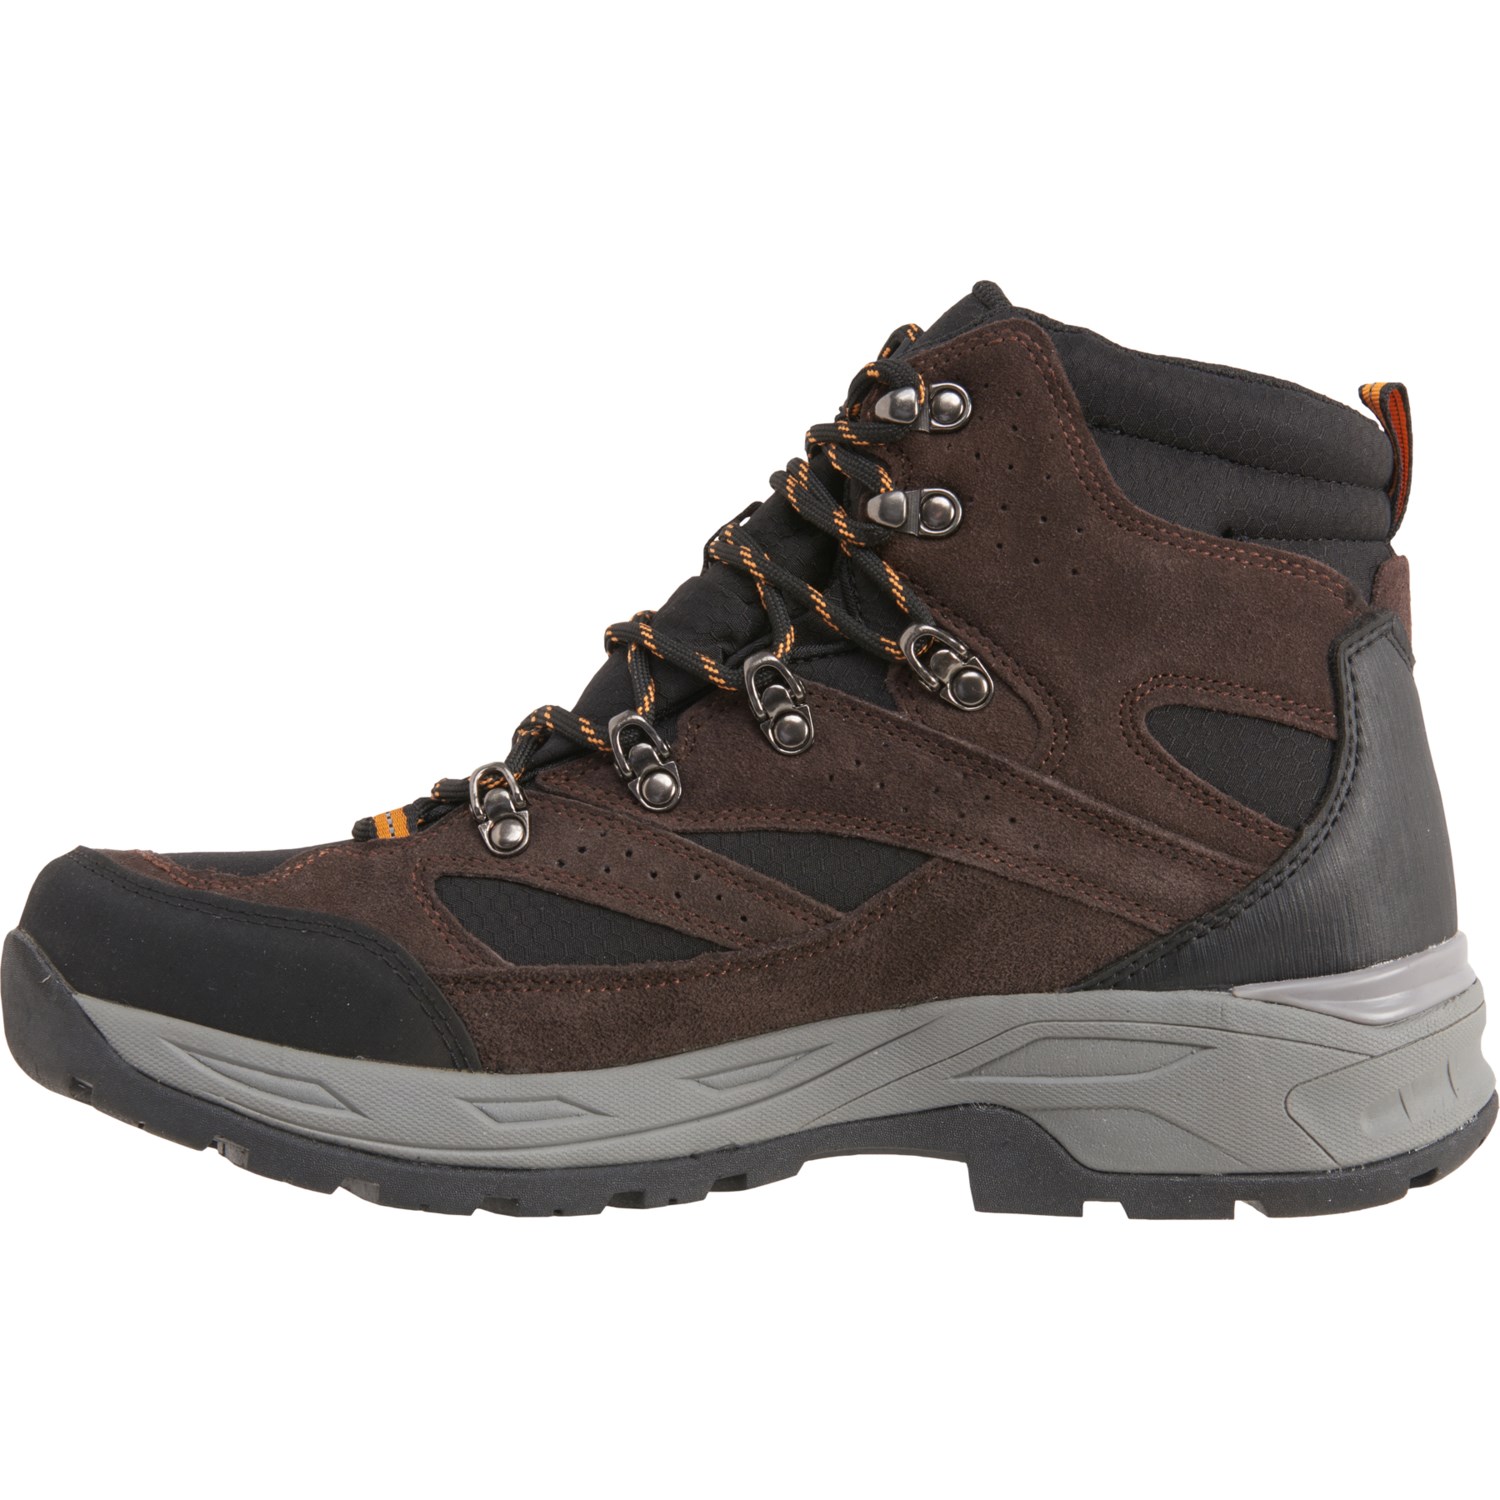 High Sierra Trekker Hiking Boots (For Men) - Save 20%